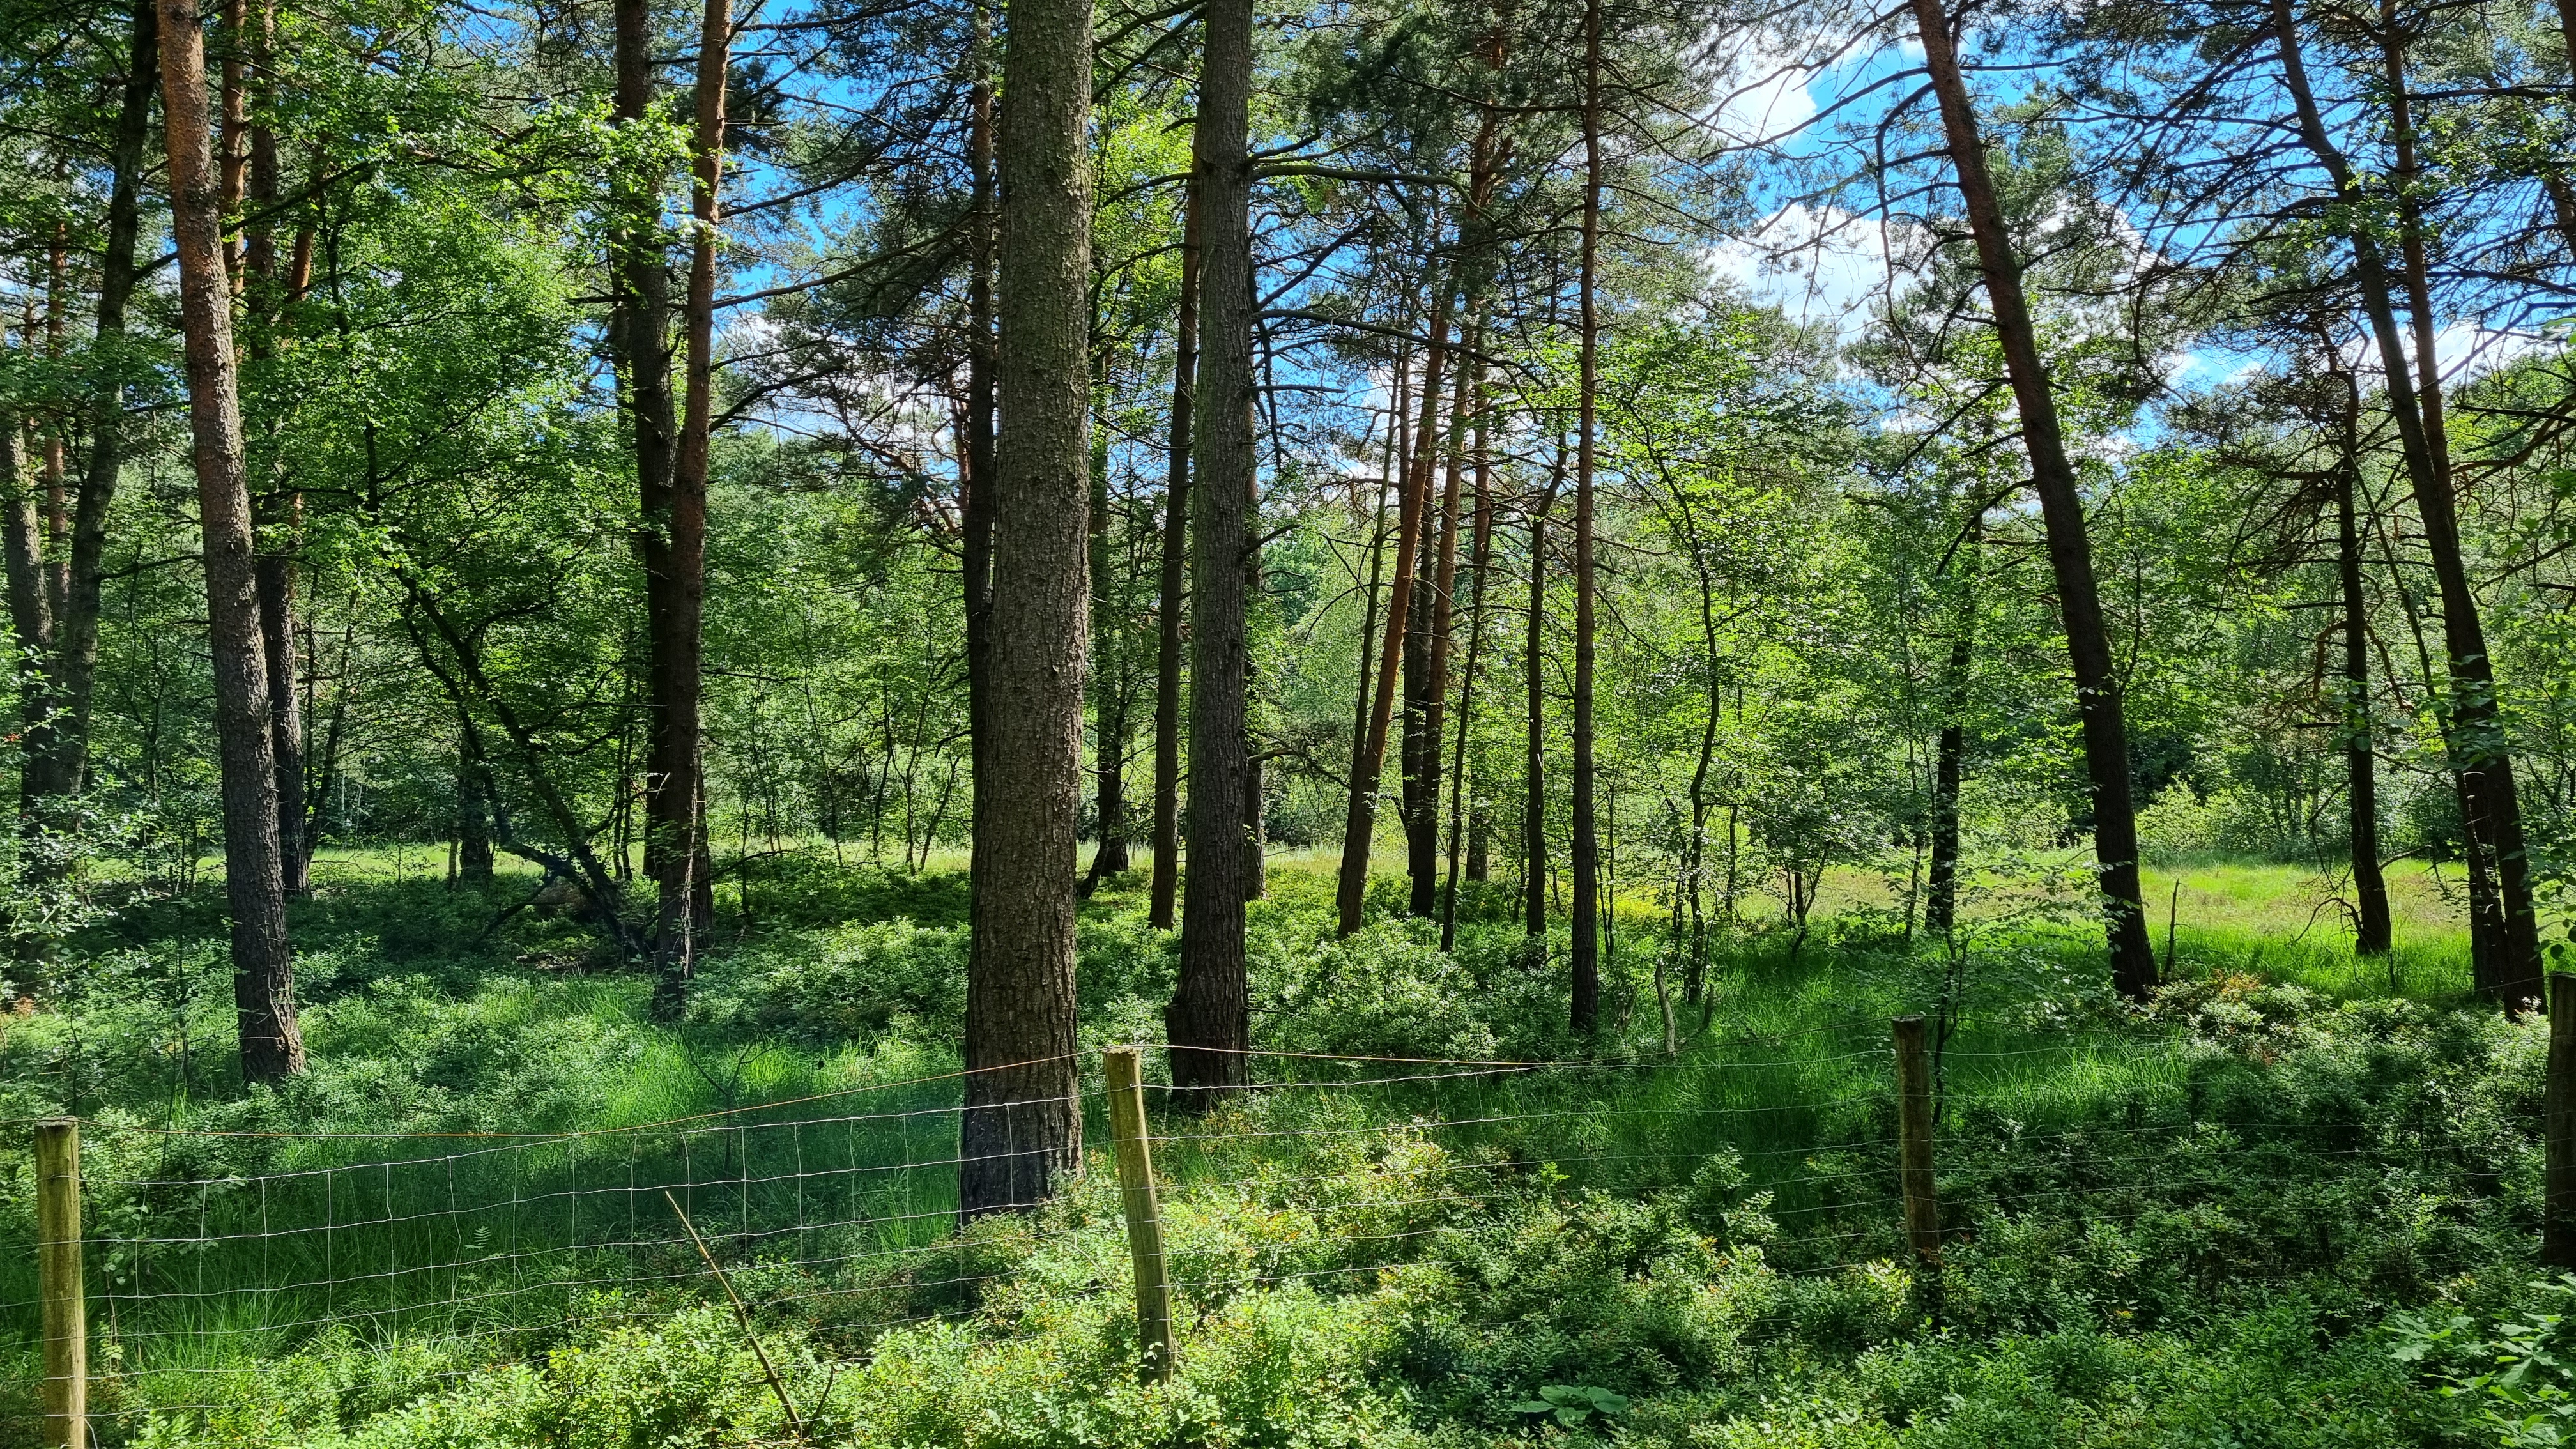 Naturschutzgebiet Kipshagener Teiche in Schloß Holte-Stukenbrock